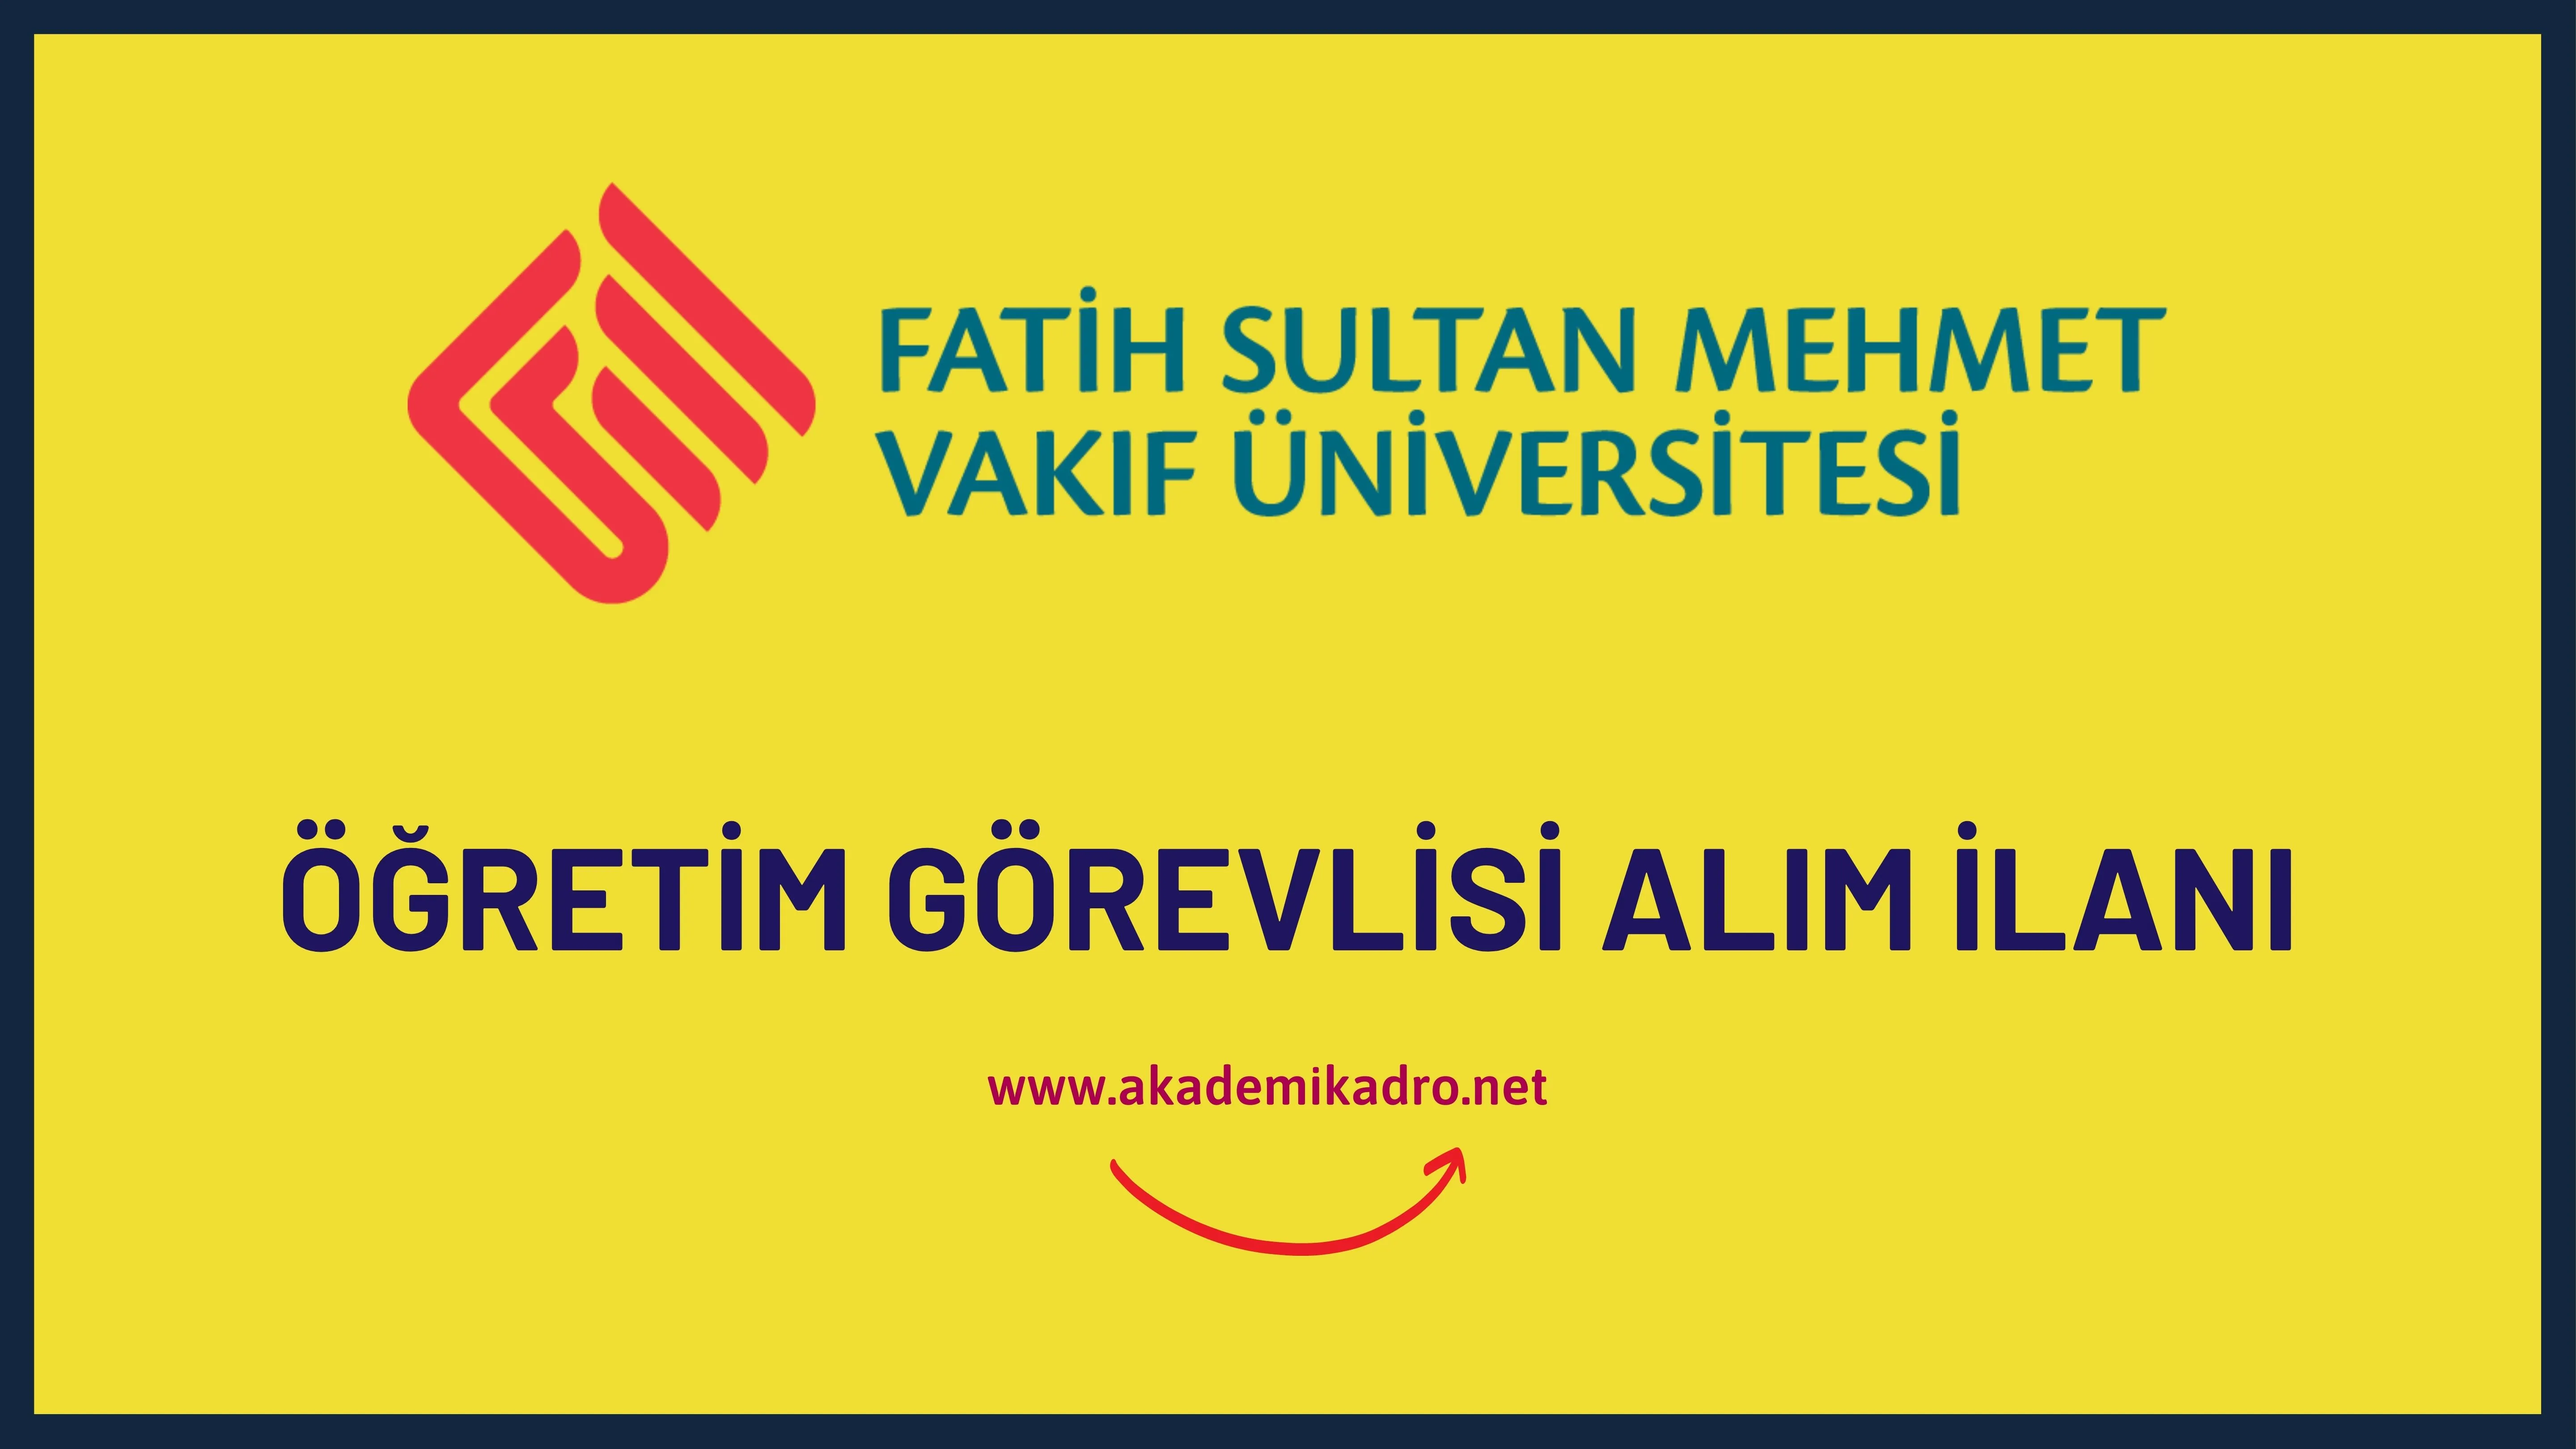 Fatih Sultan Mehmet Vakıf Üniversitesi 6 Öğretim görevlisi alacak.